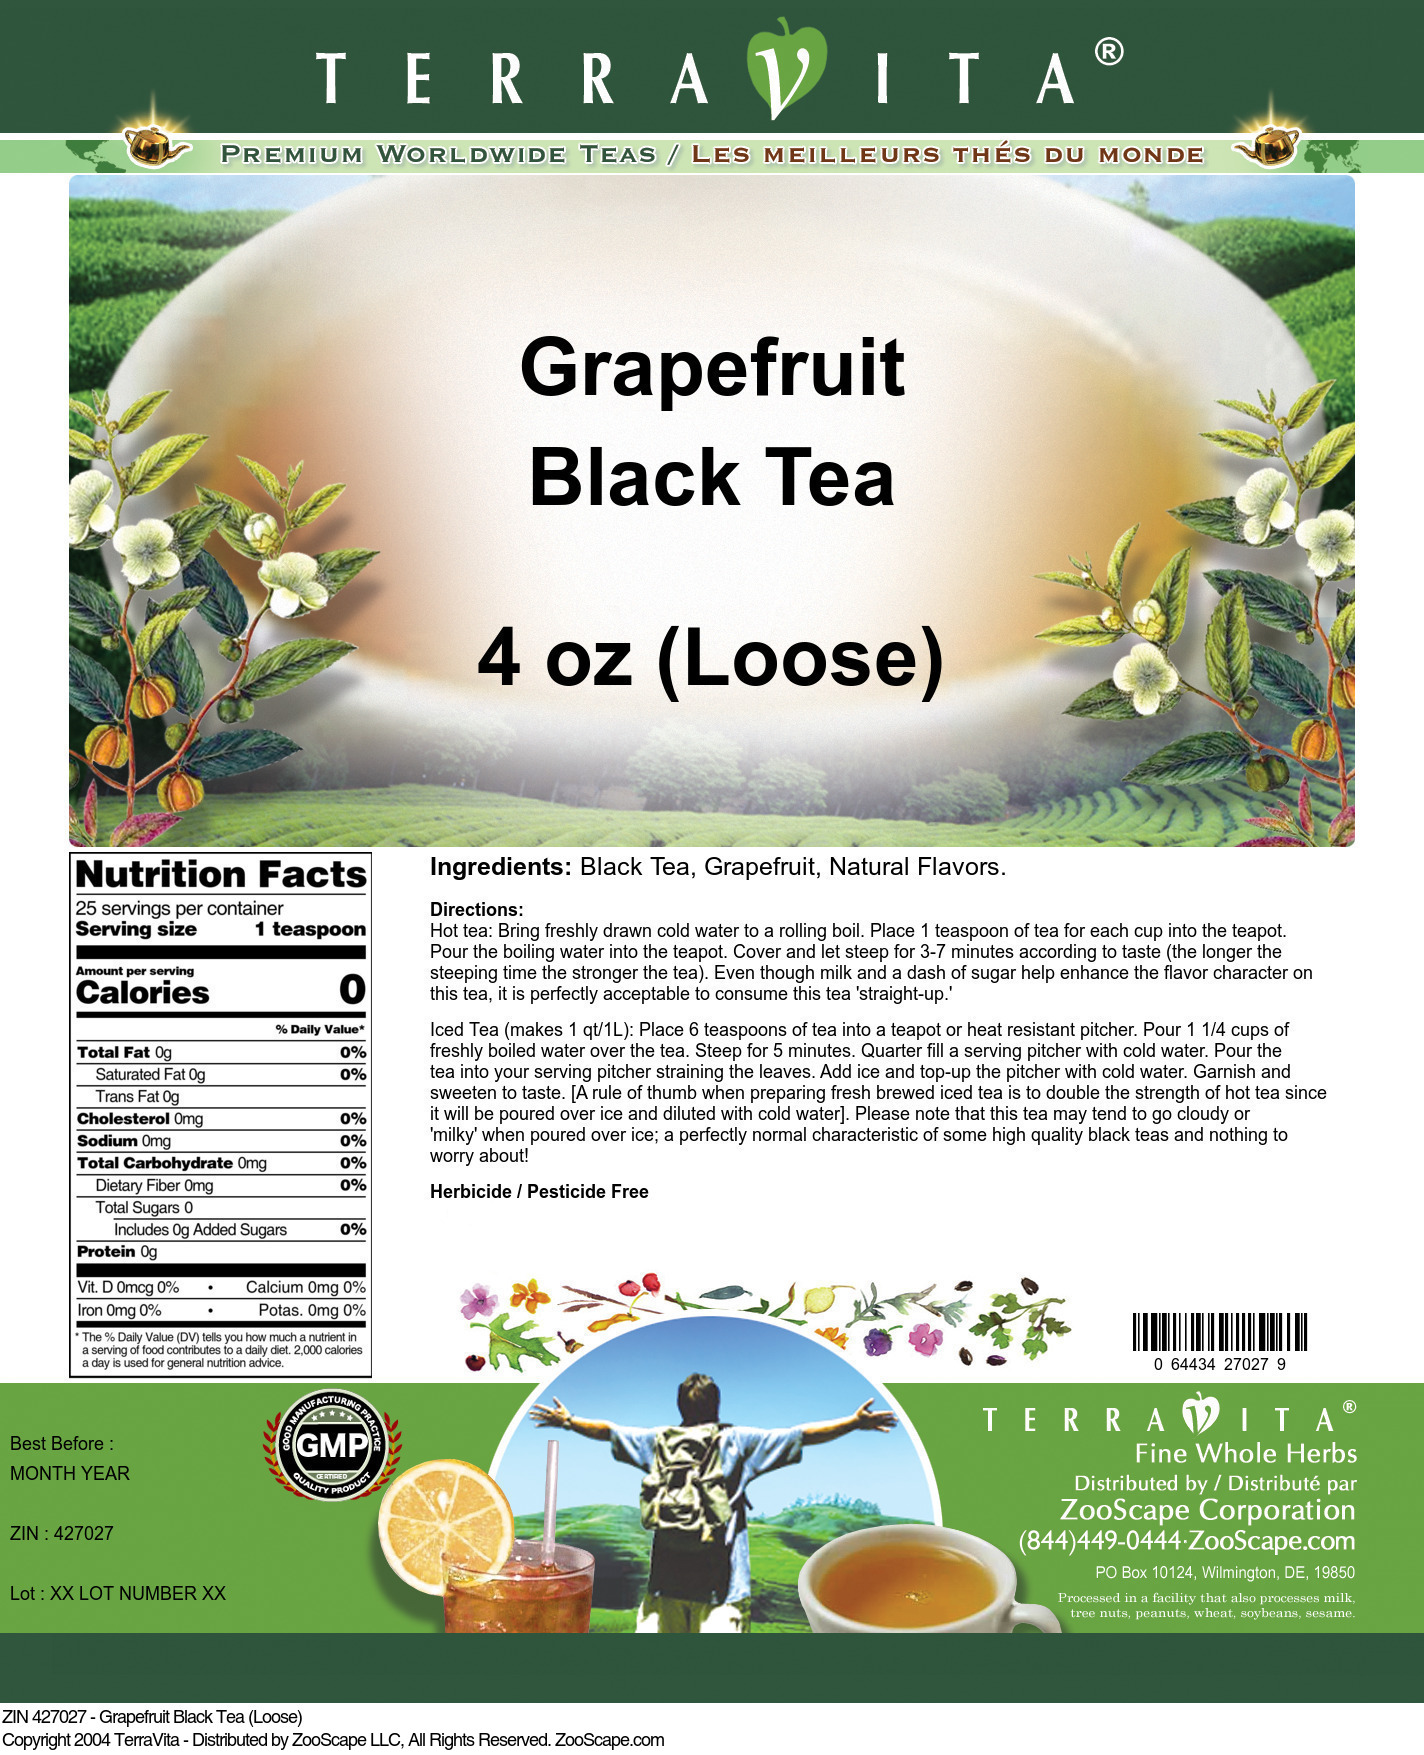 Grapefruit Black Tea (Loose) - Label